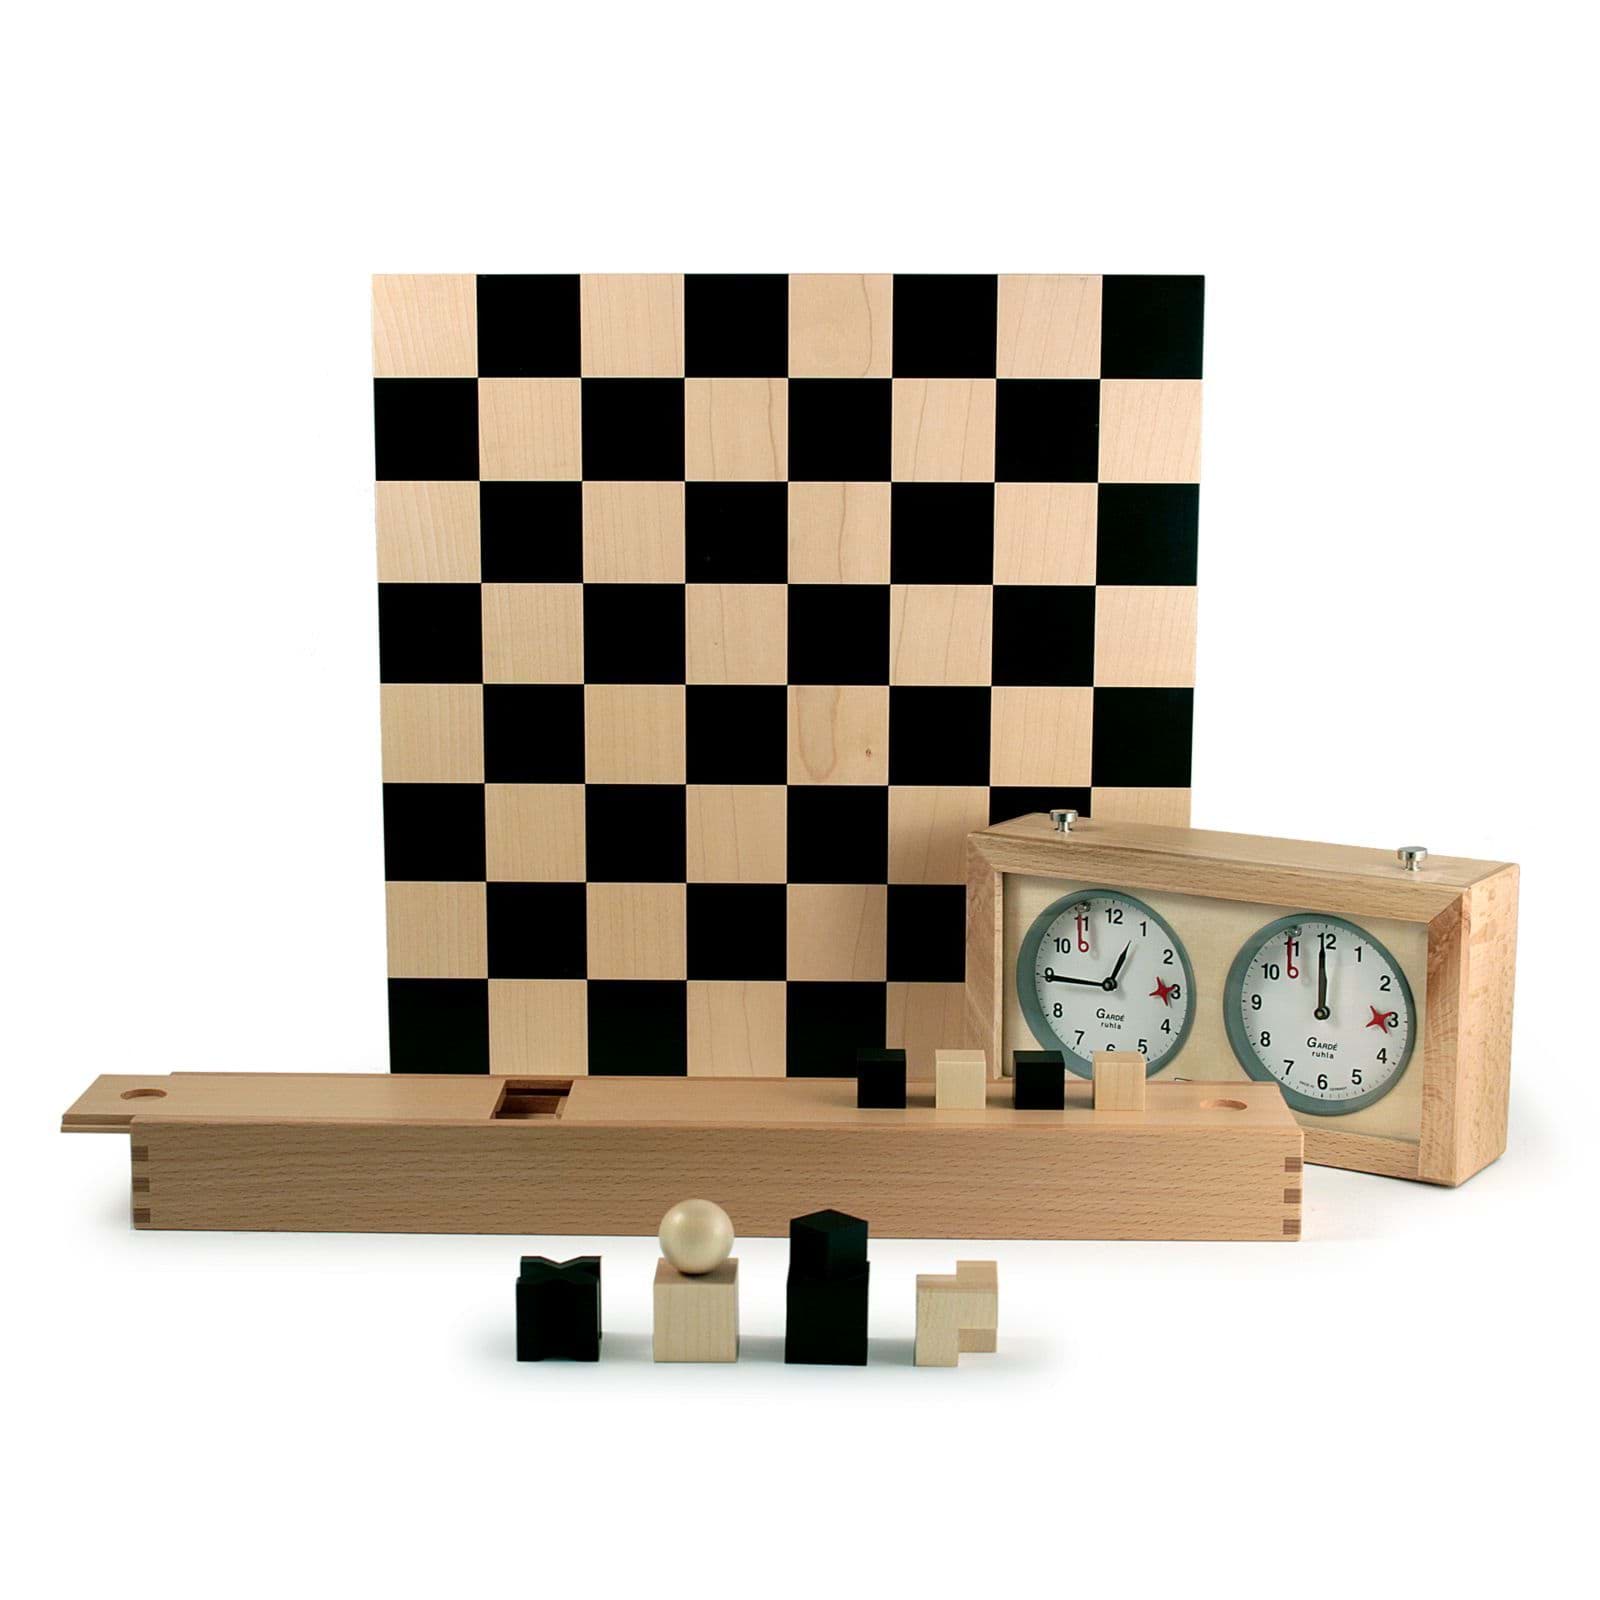 صورة لعبة شطرنج باوهاوس لجوزيف هارتويج + ساعة الشطرنج
